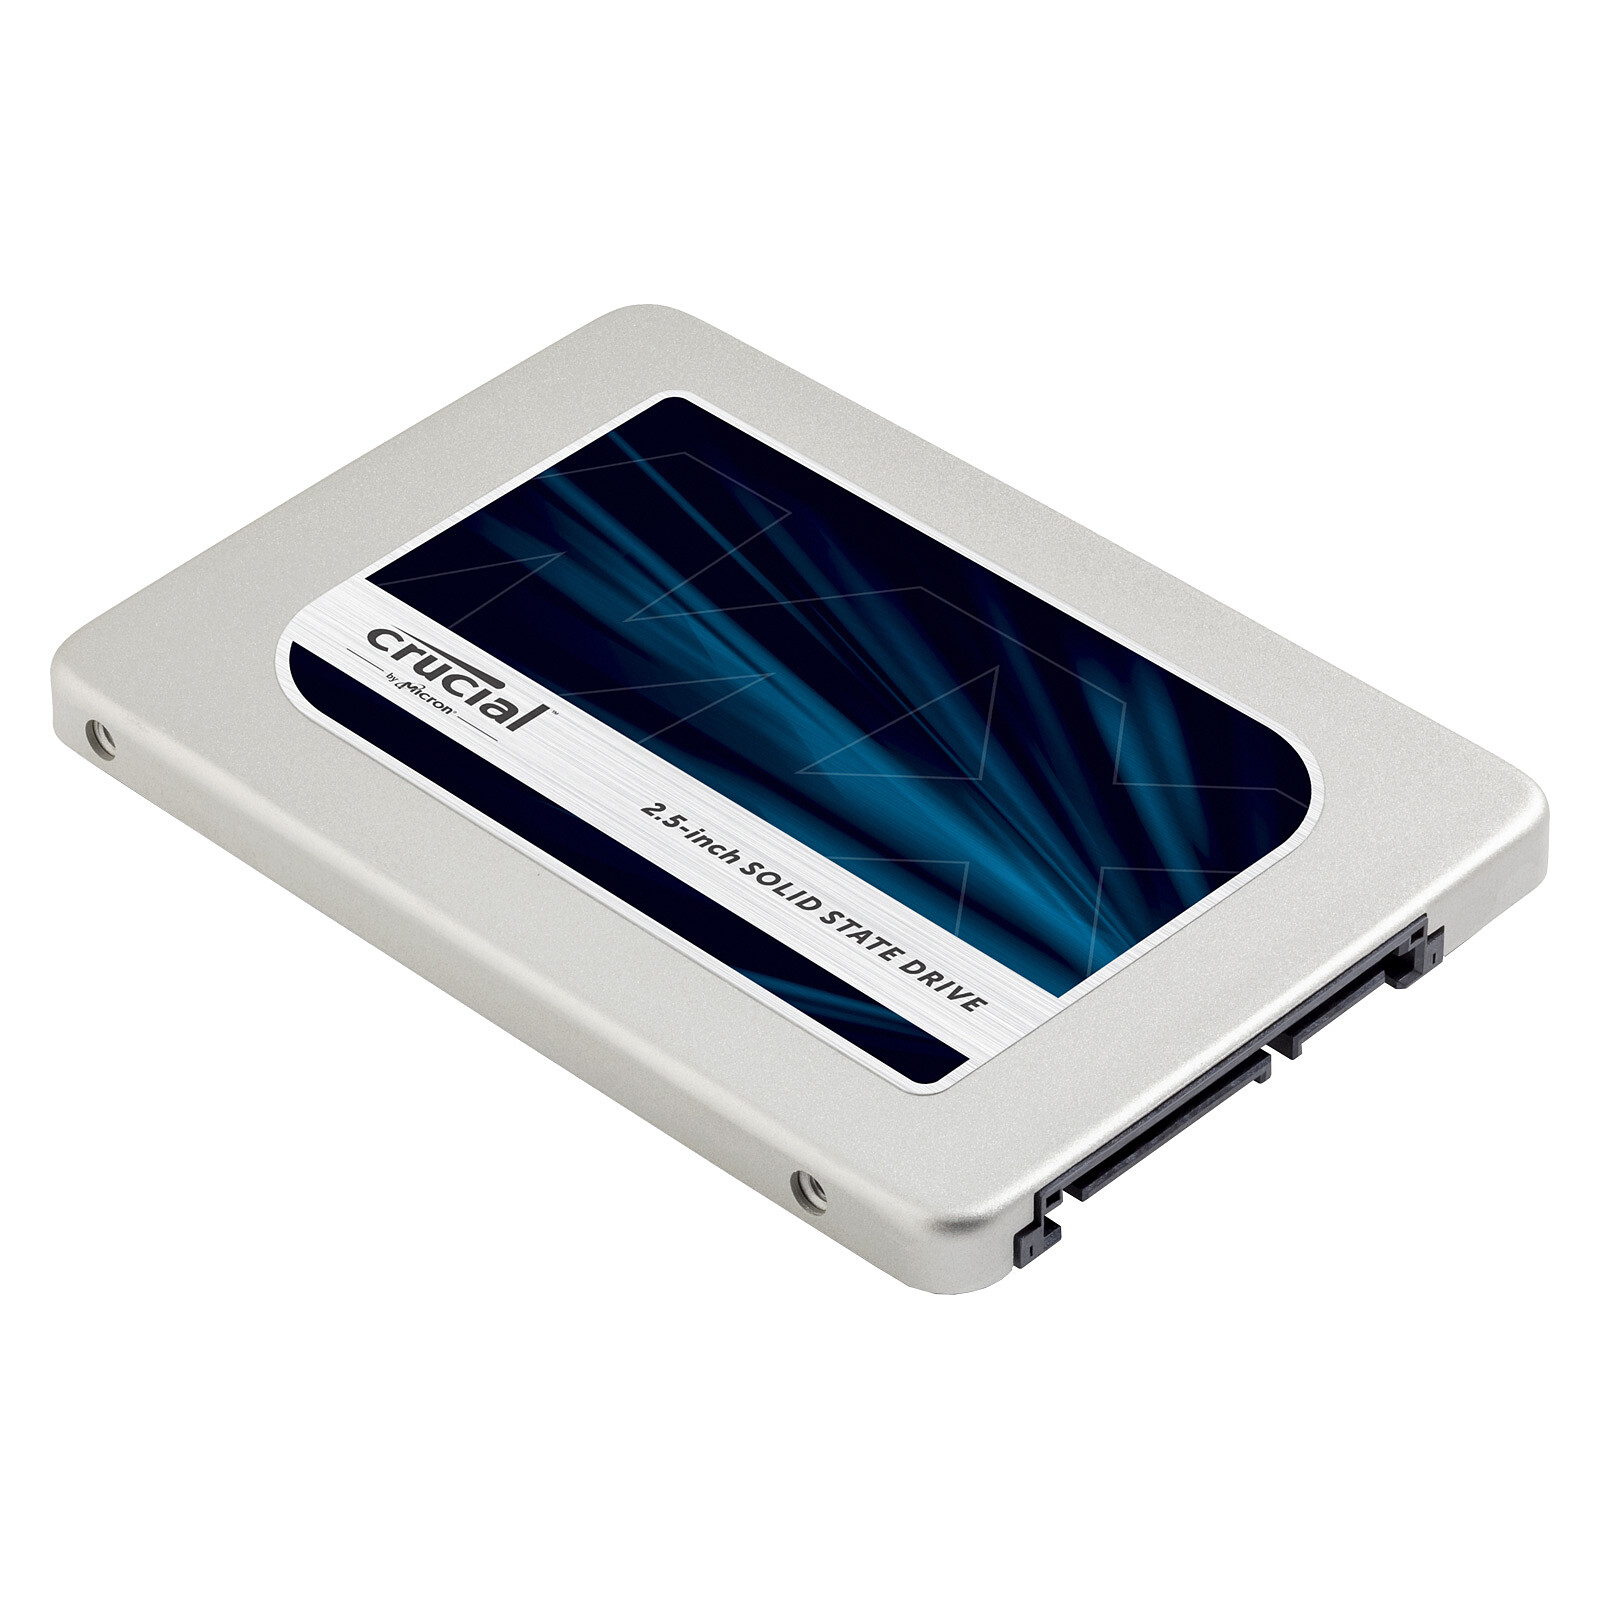 Crucial DISQUE EXTERNE SSD 500G -X6 - 540 Mps - Prix pas cher